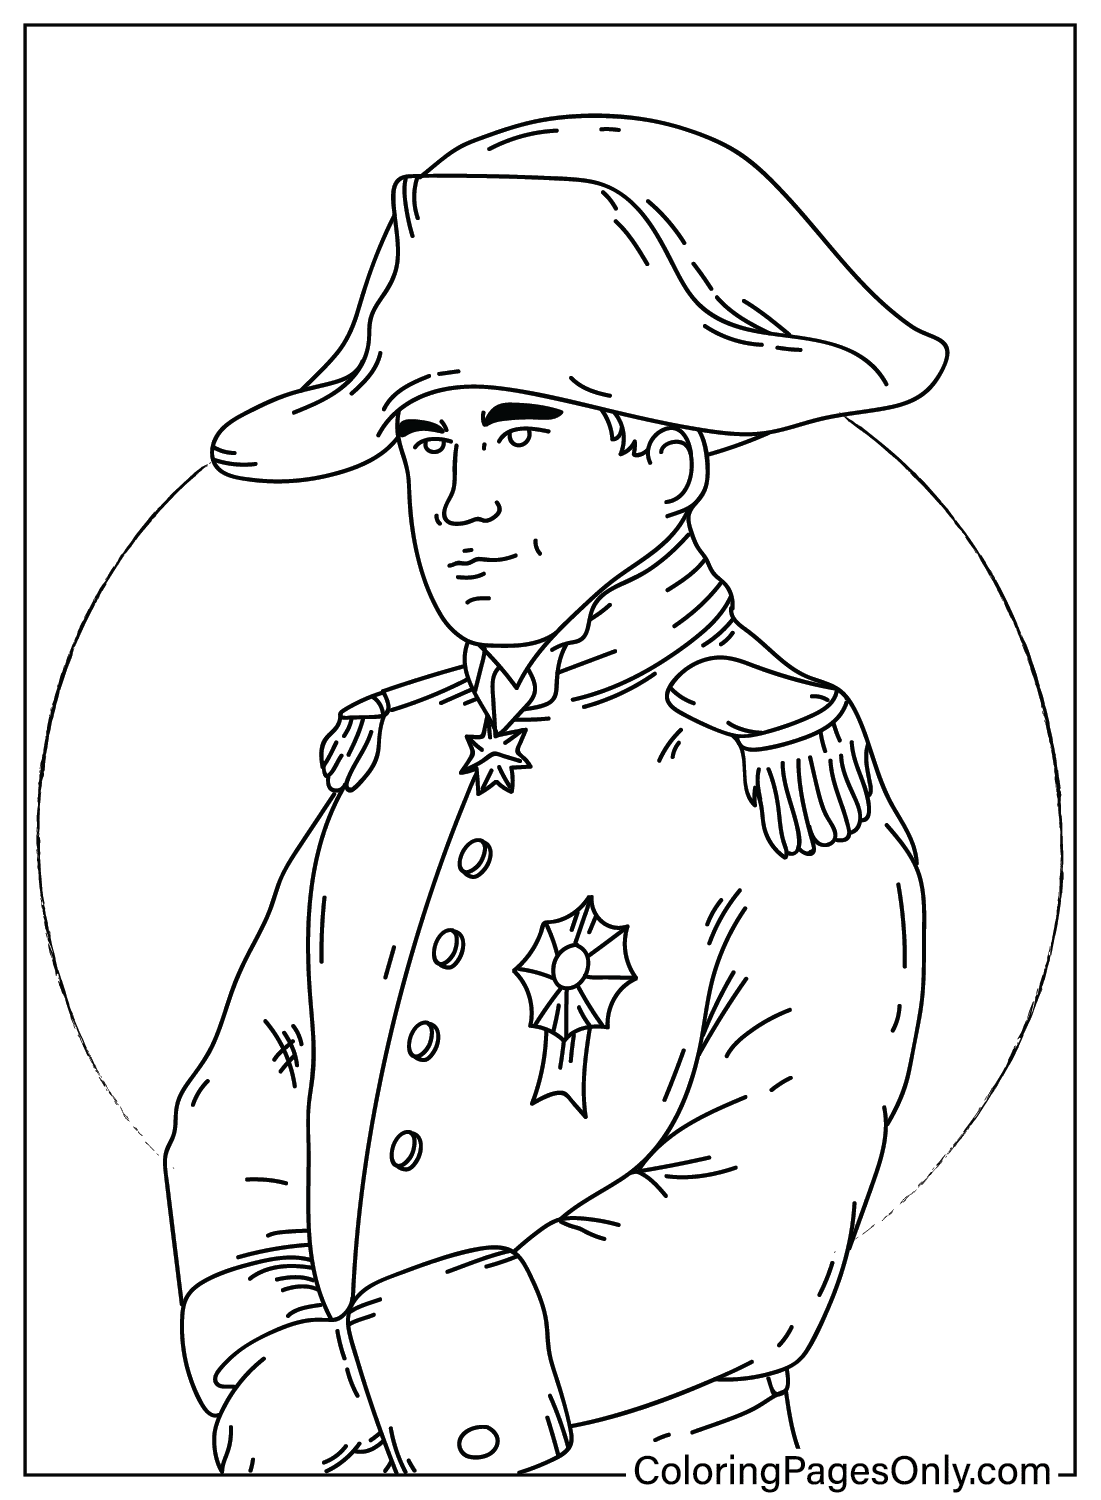 Dibujo para colorear Napoleón Bonaparte de Napoleón Bonaparte